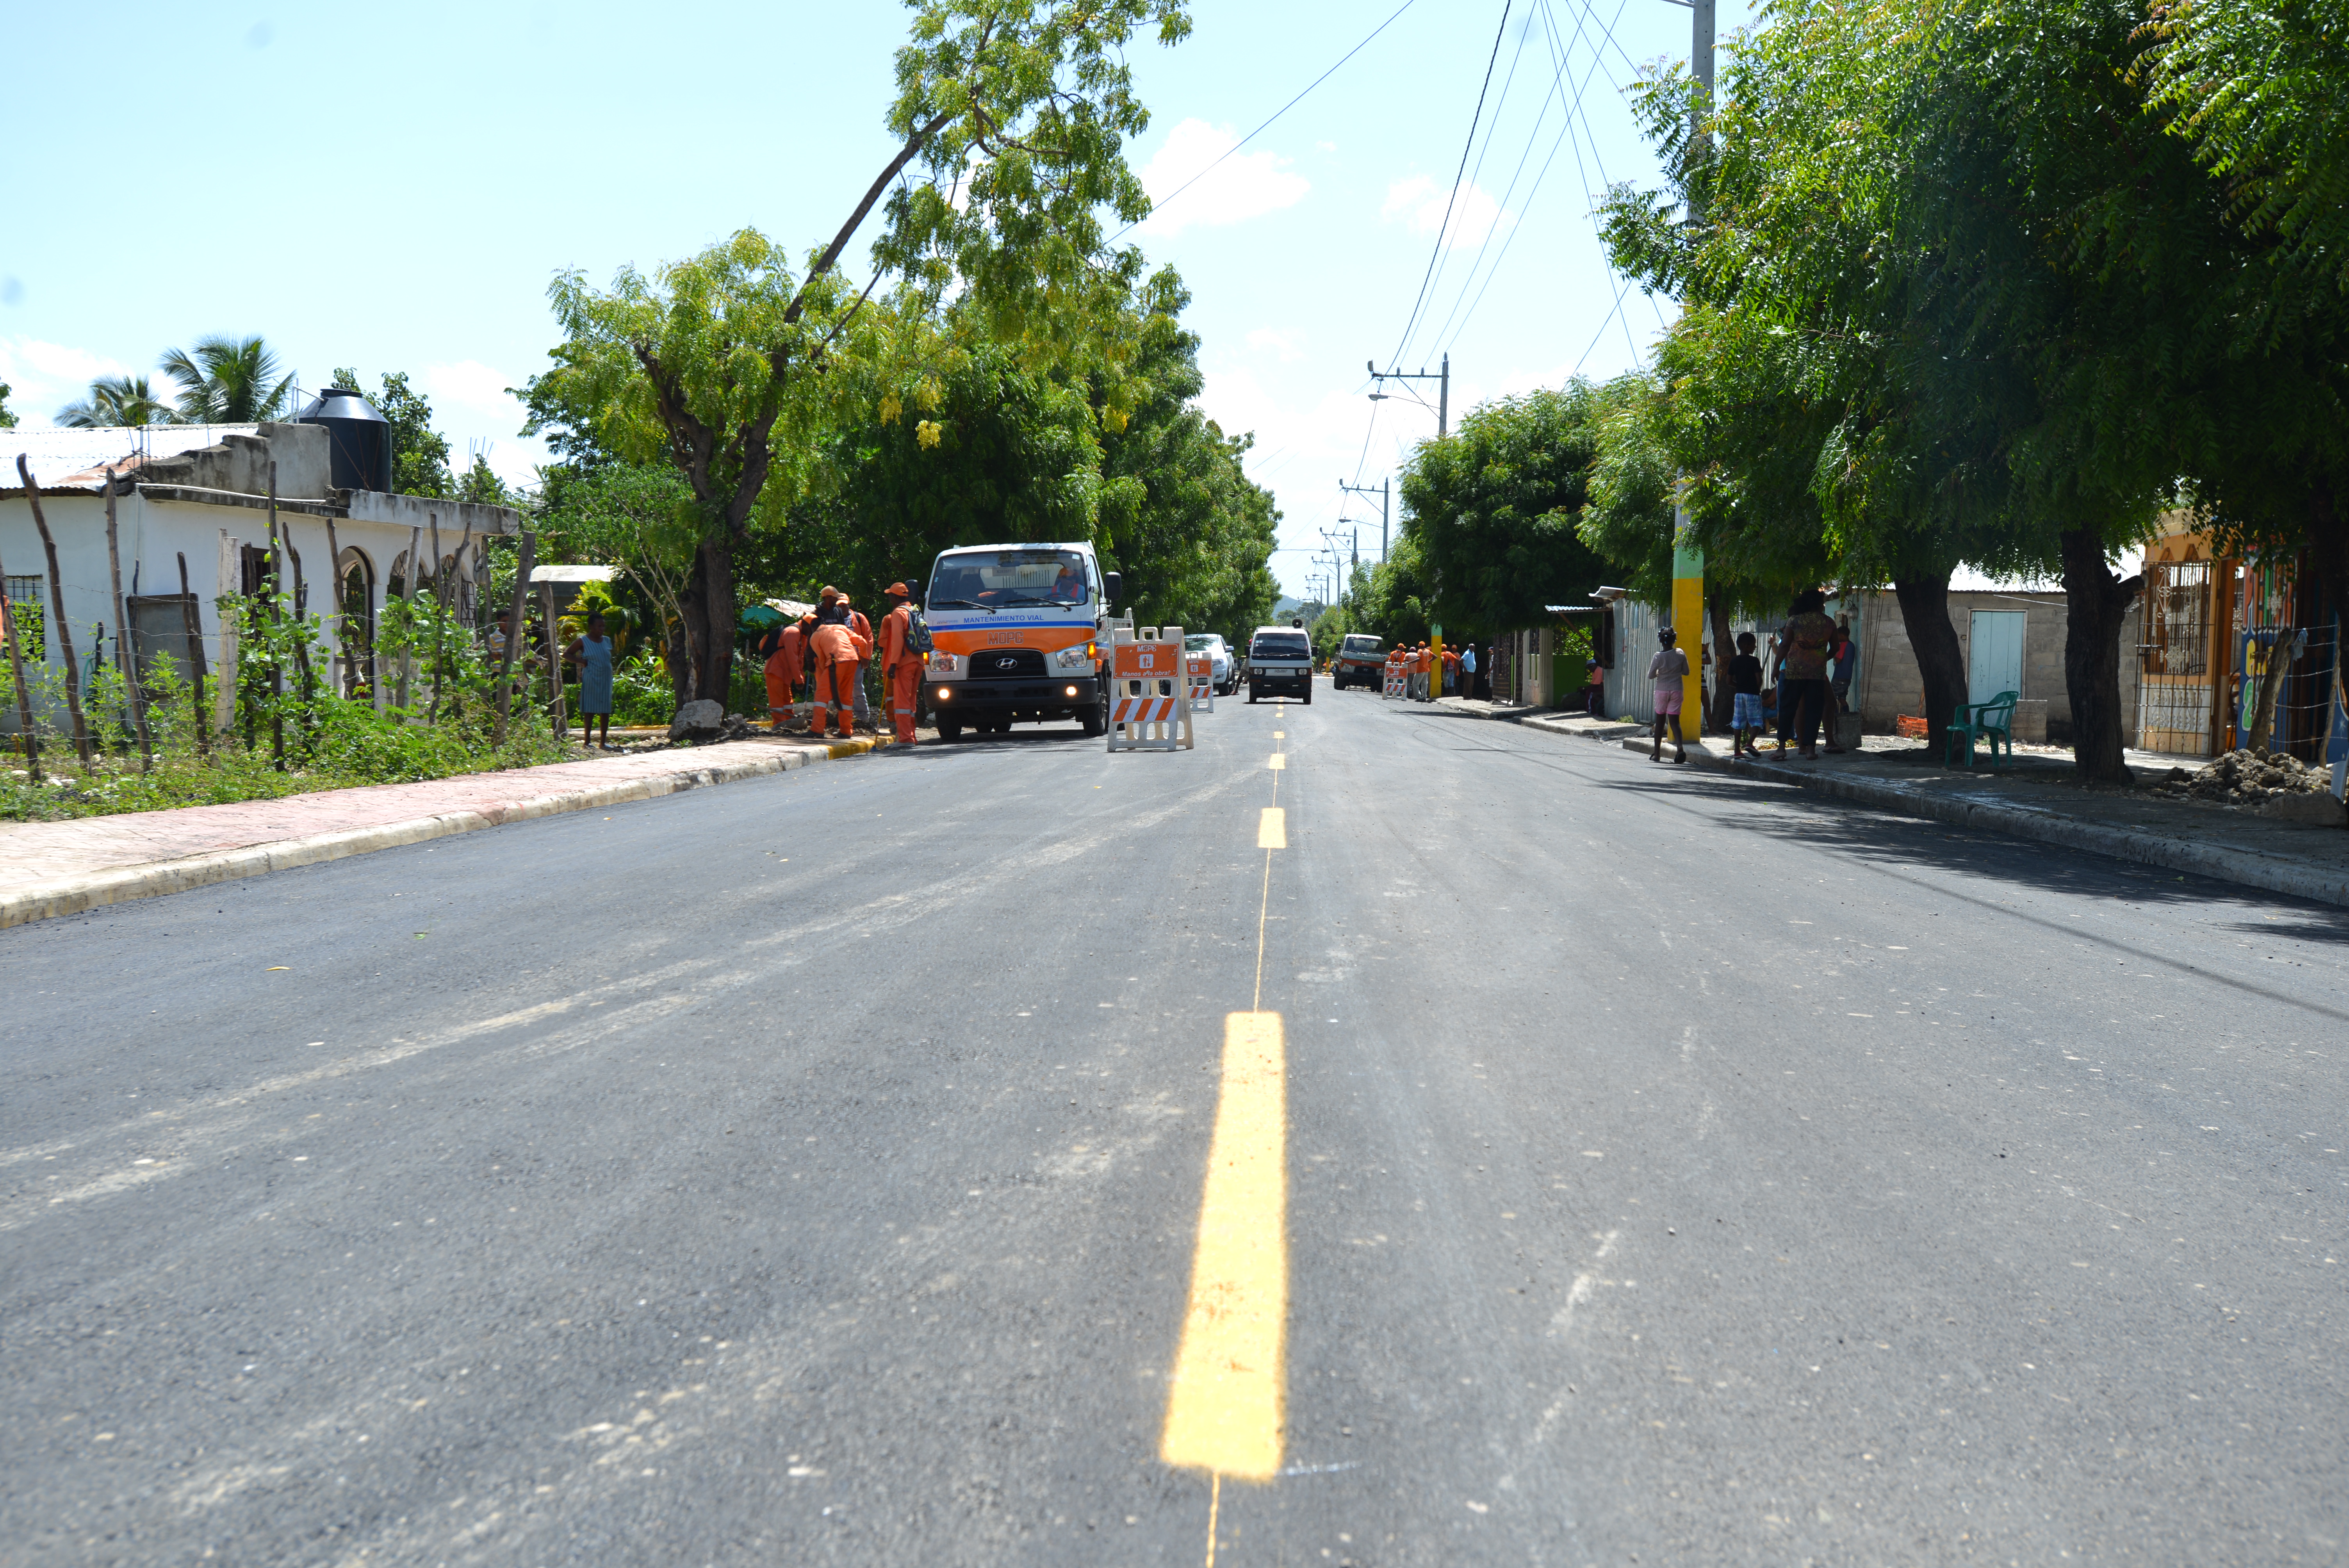  Obras Públicas concluye trabajos en carreteras  y asfaltado calles de Vallejuelo